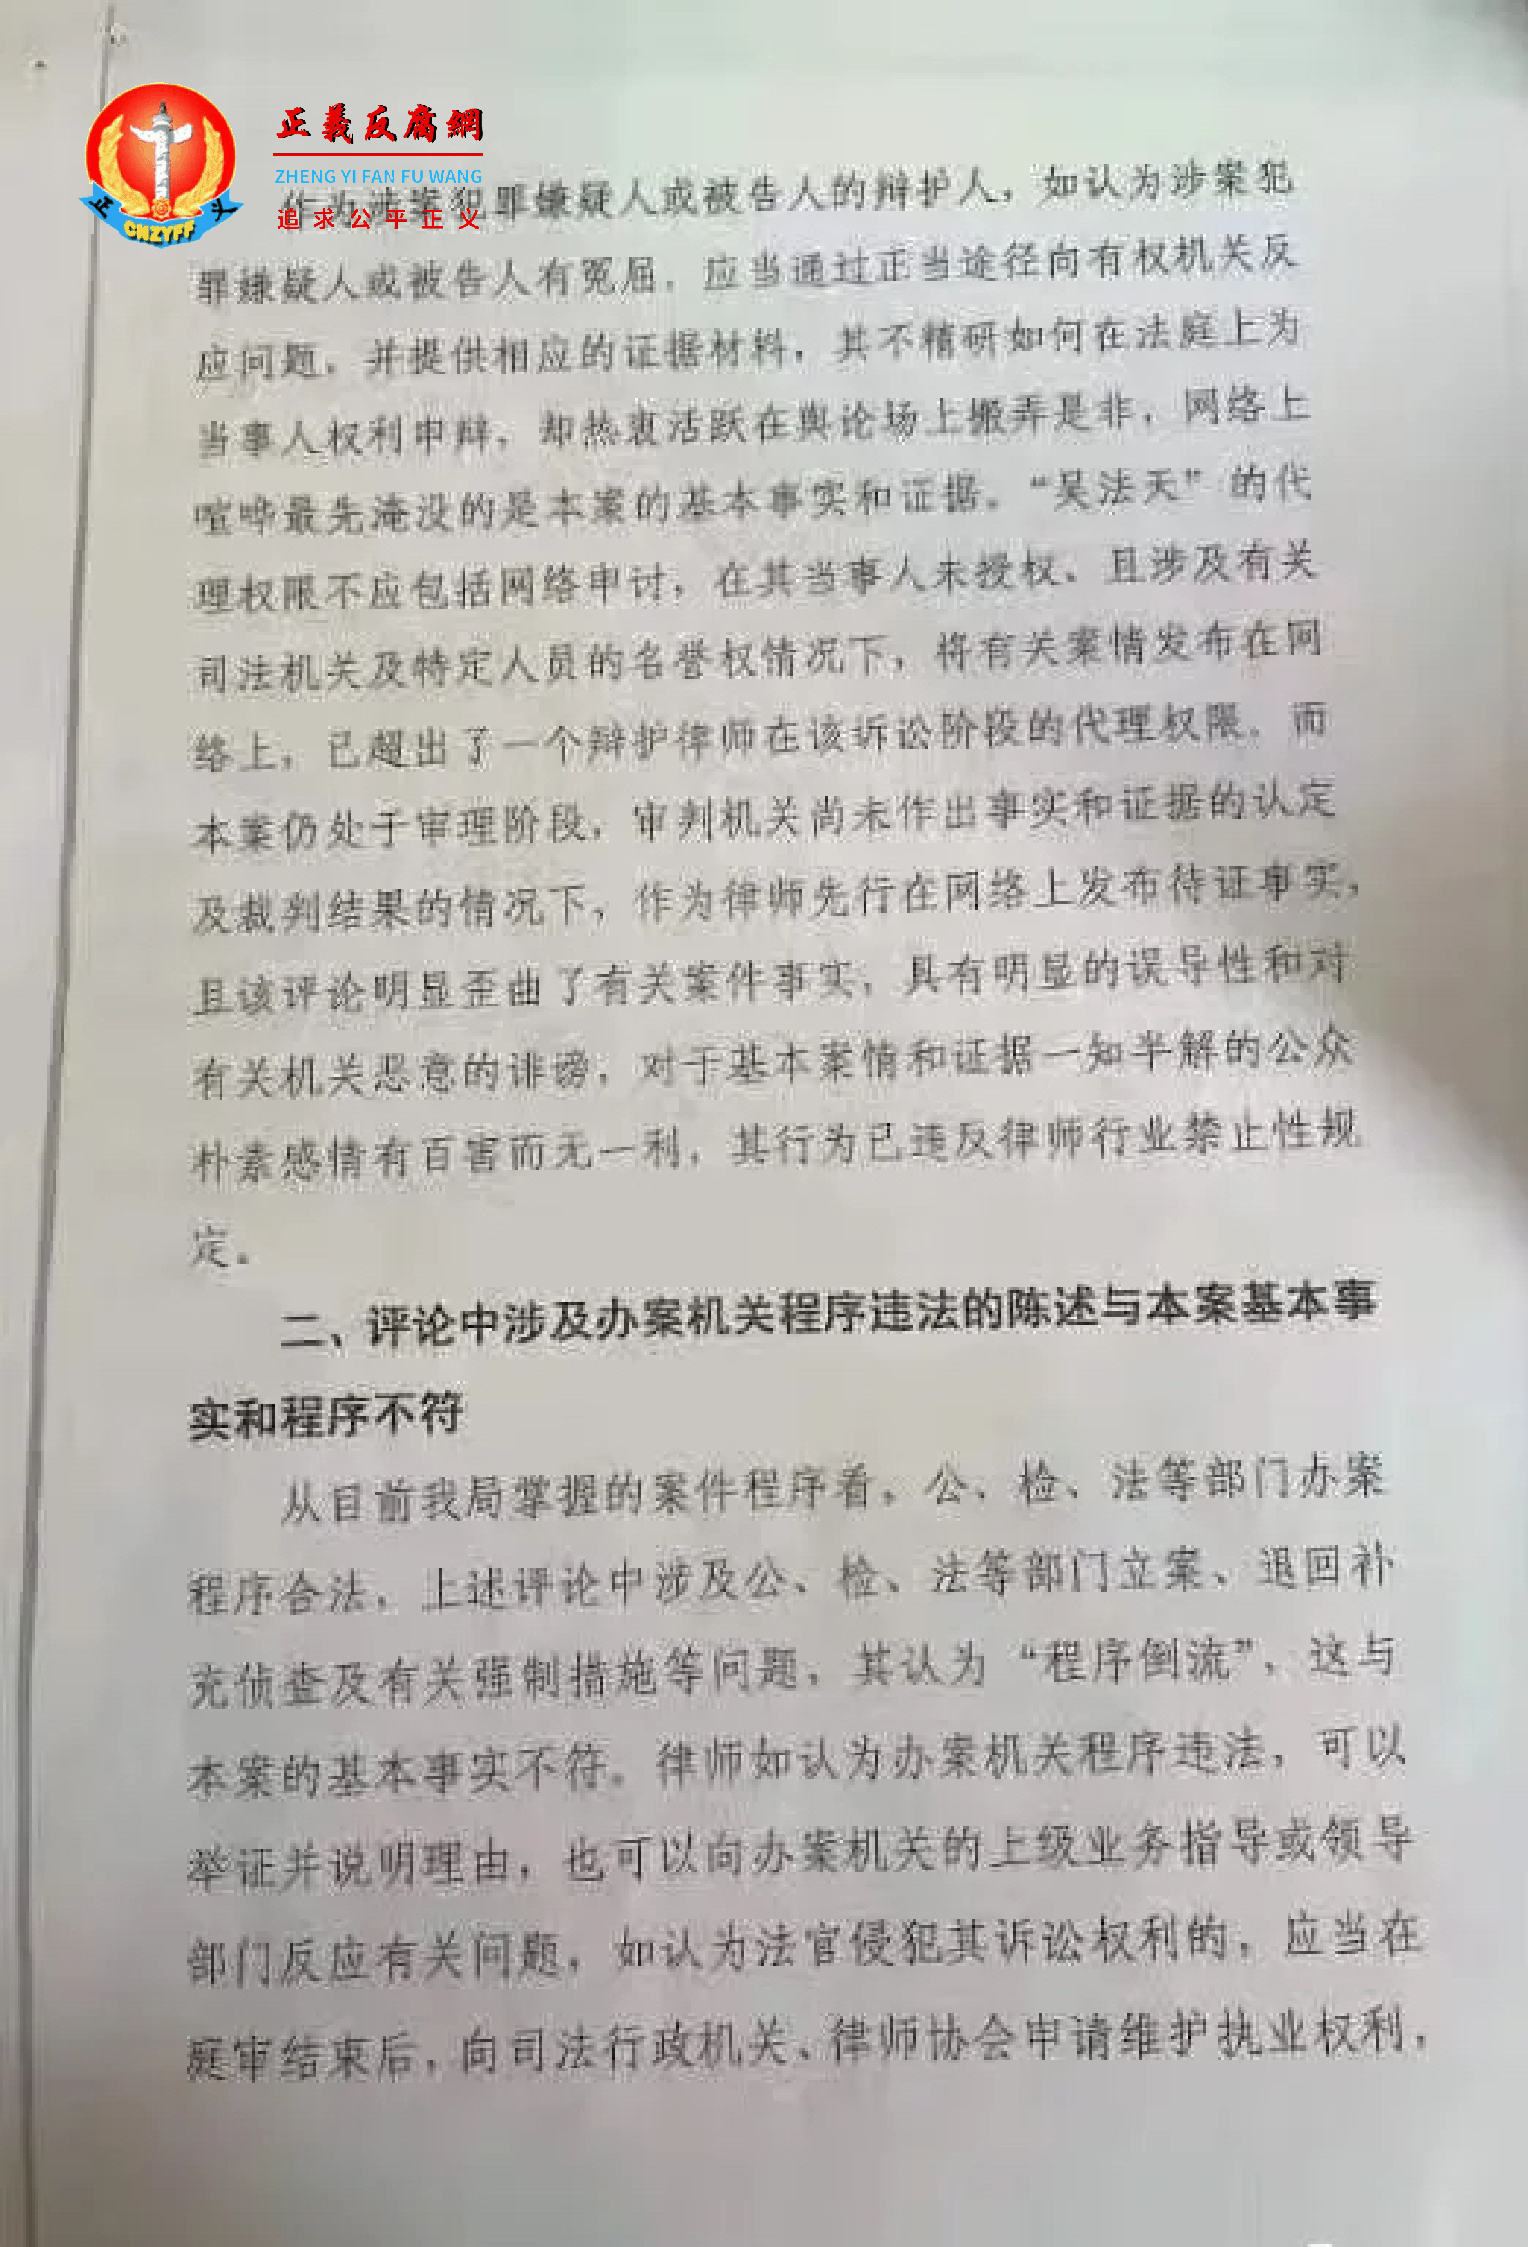 关于“吴法天”等律师“天下说法”微信公众号发布文章舆情的函第三页.png